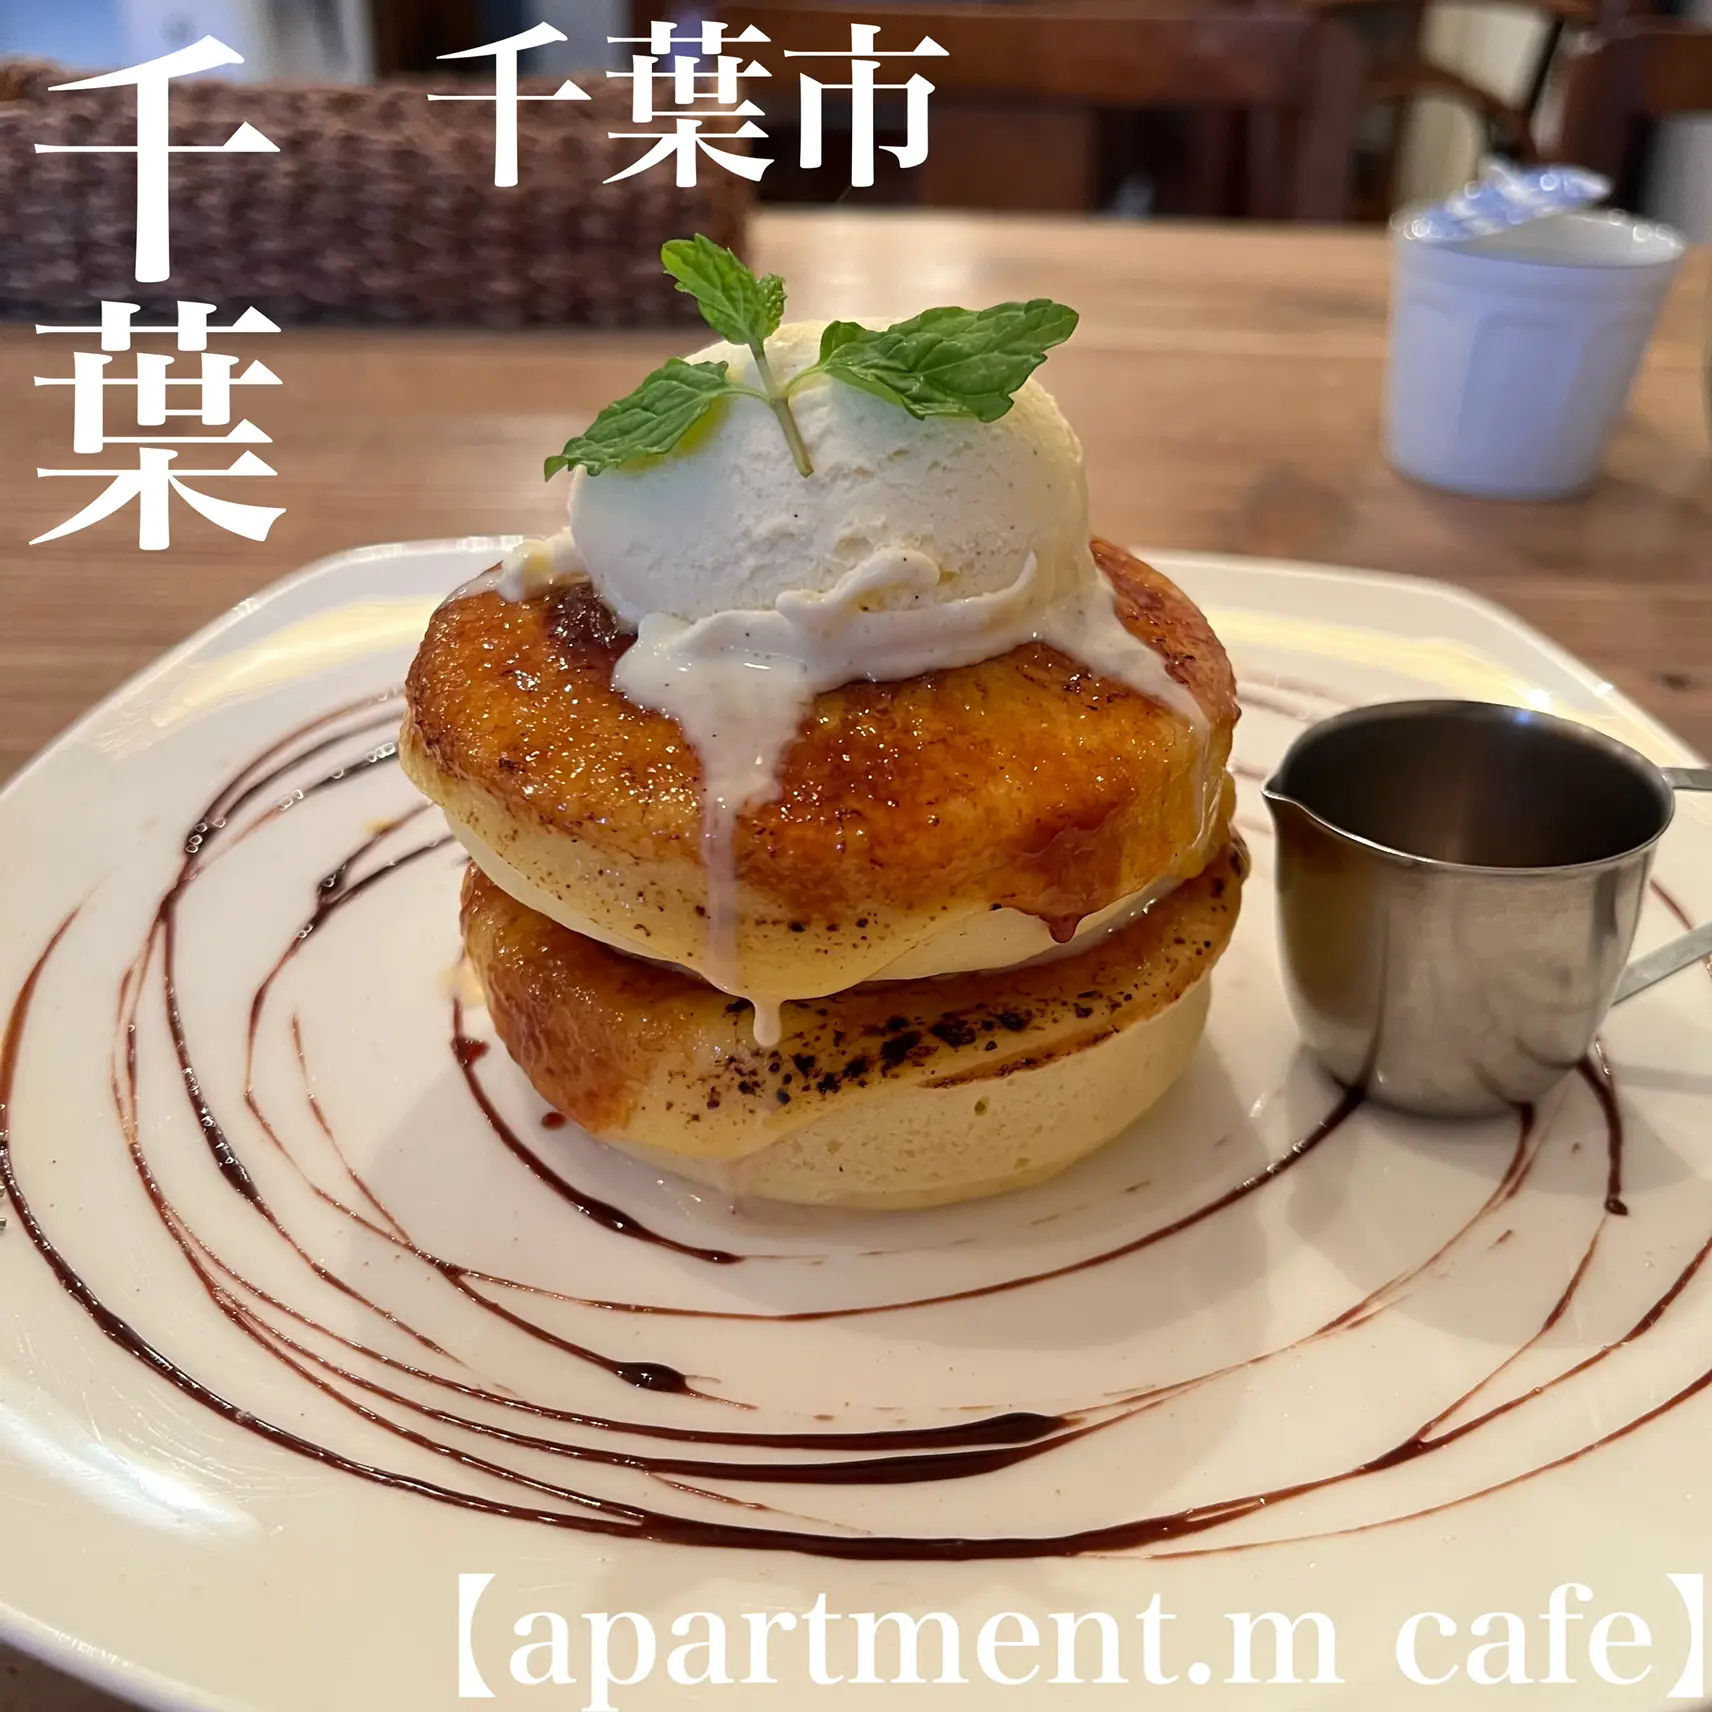 千葉 本千葉 絶対食べたくなる ふわふわもちもちの台湾パンケーキ専門店 ゆまグルメ 千葉カフェグルメ が投稿したフォトブック Lemon8